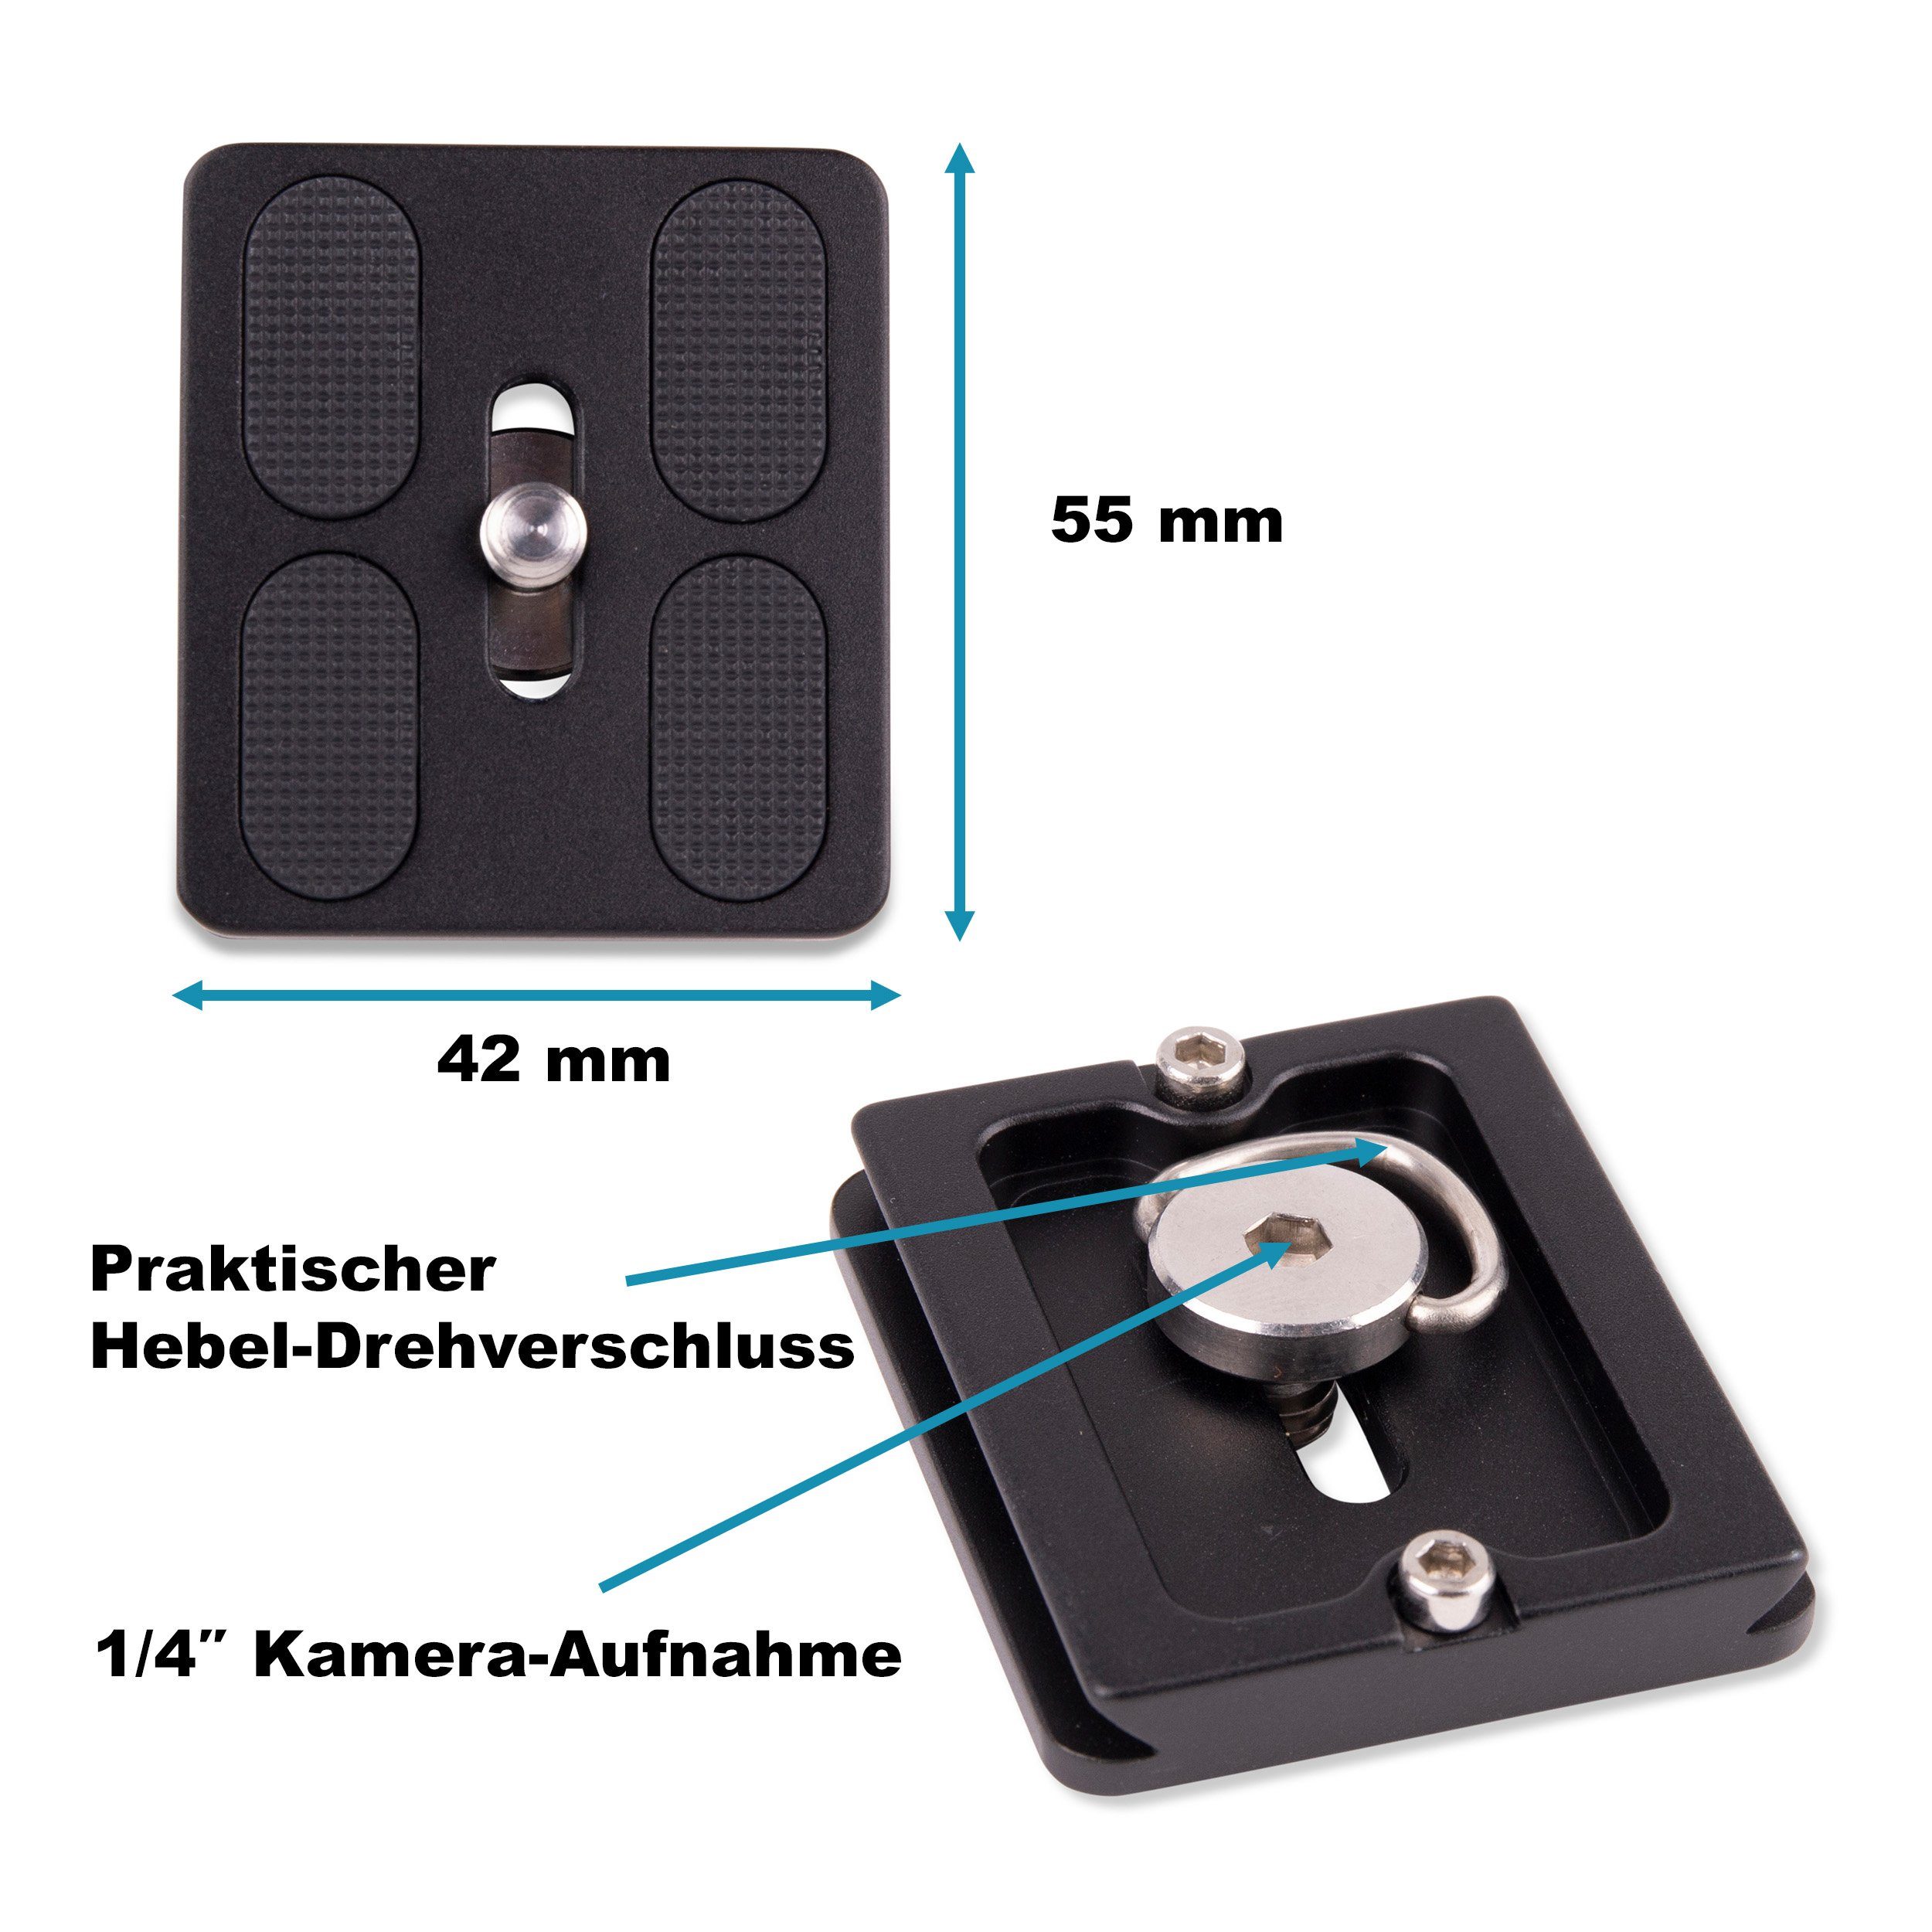 kompatibel) Lens-Aid 55 Stativhalterung Swiss mm Schnellwechselplatte (Arca